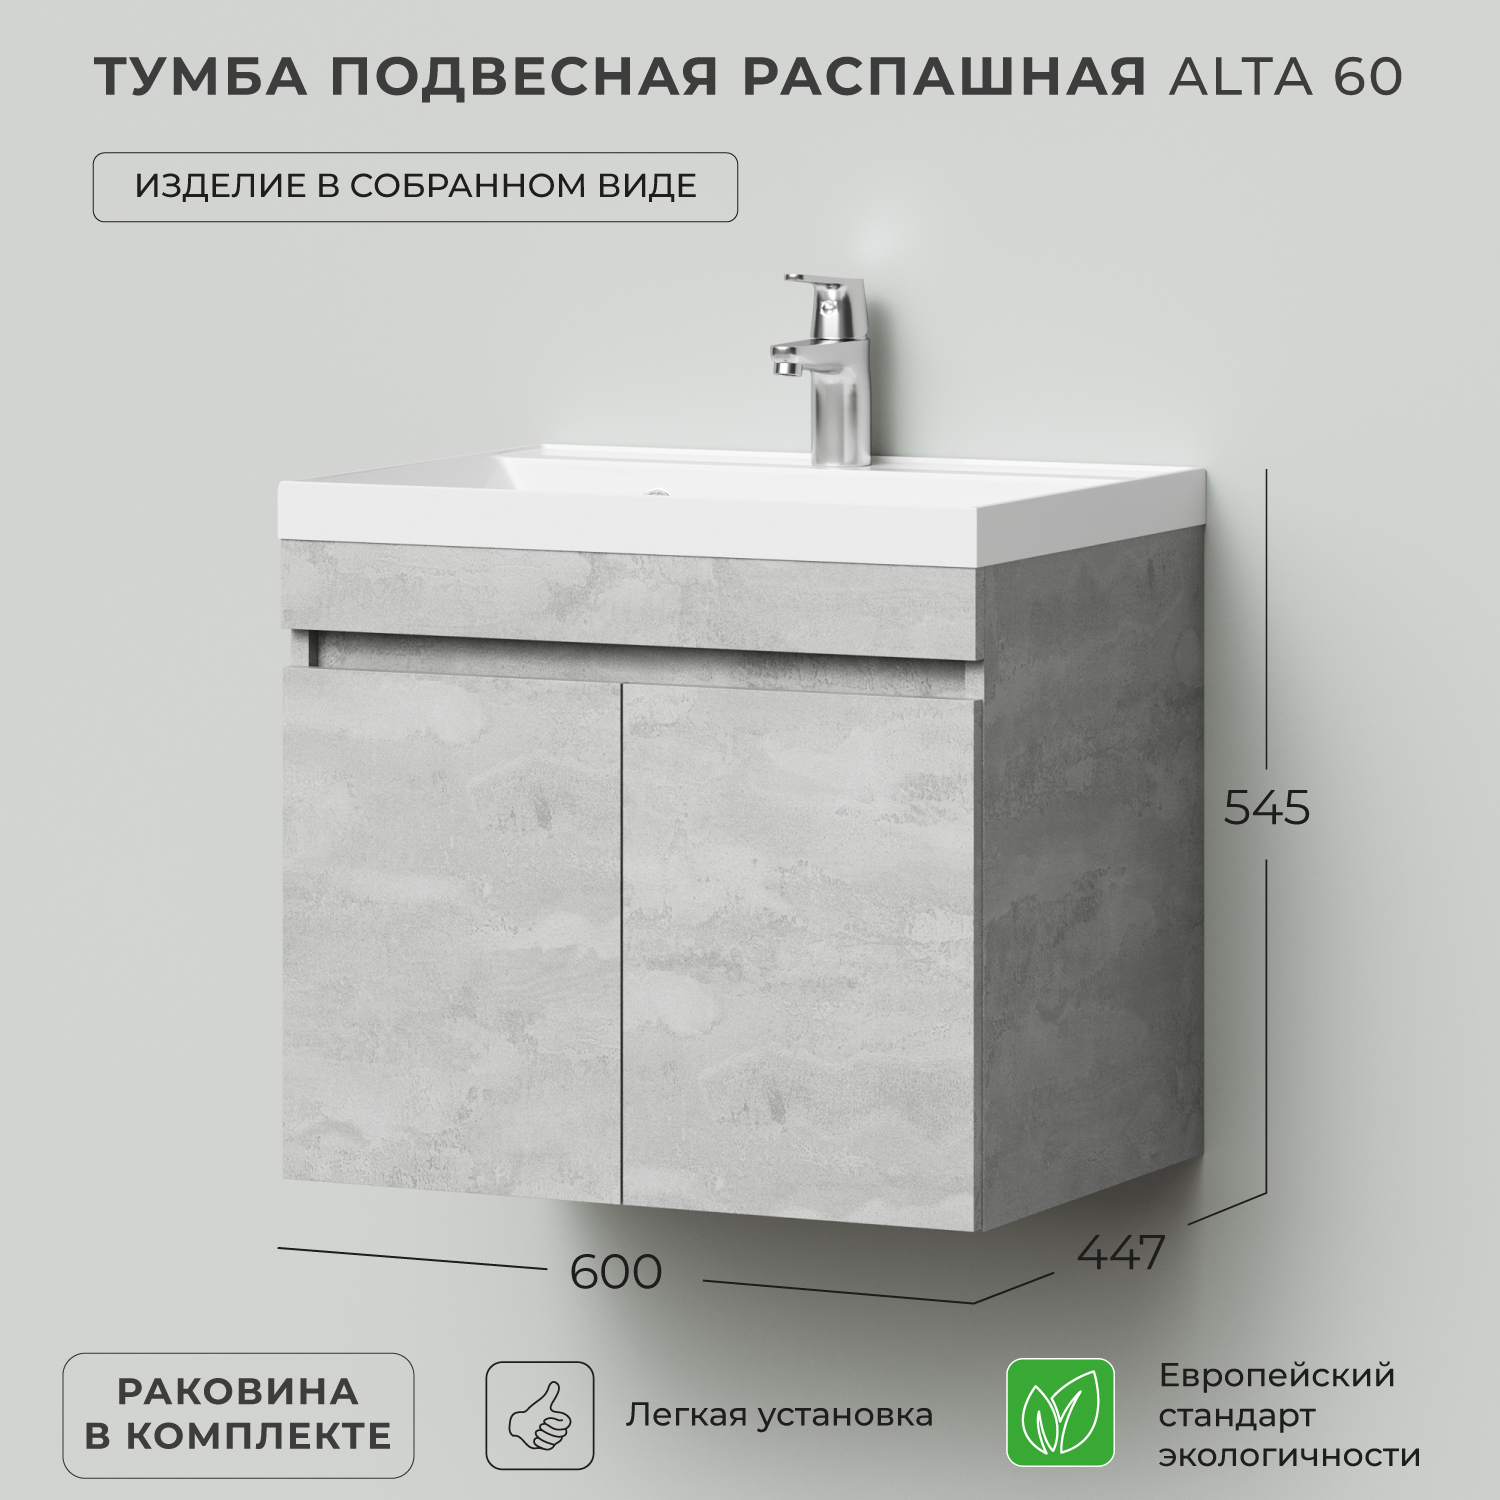 фото Тумба c раковиной в ванную ika alta 60 600х447х545 подвесная распашная бетонный камень